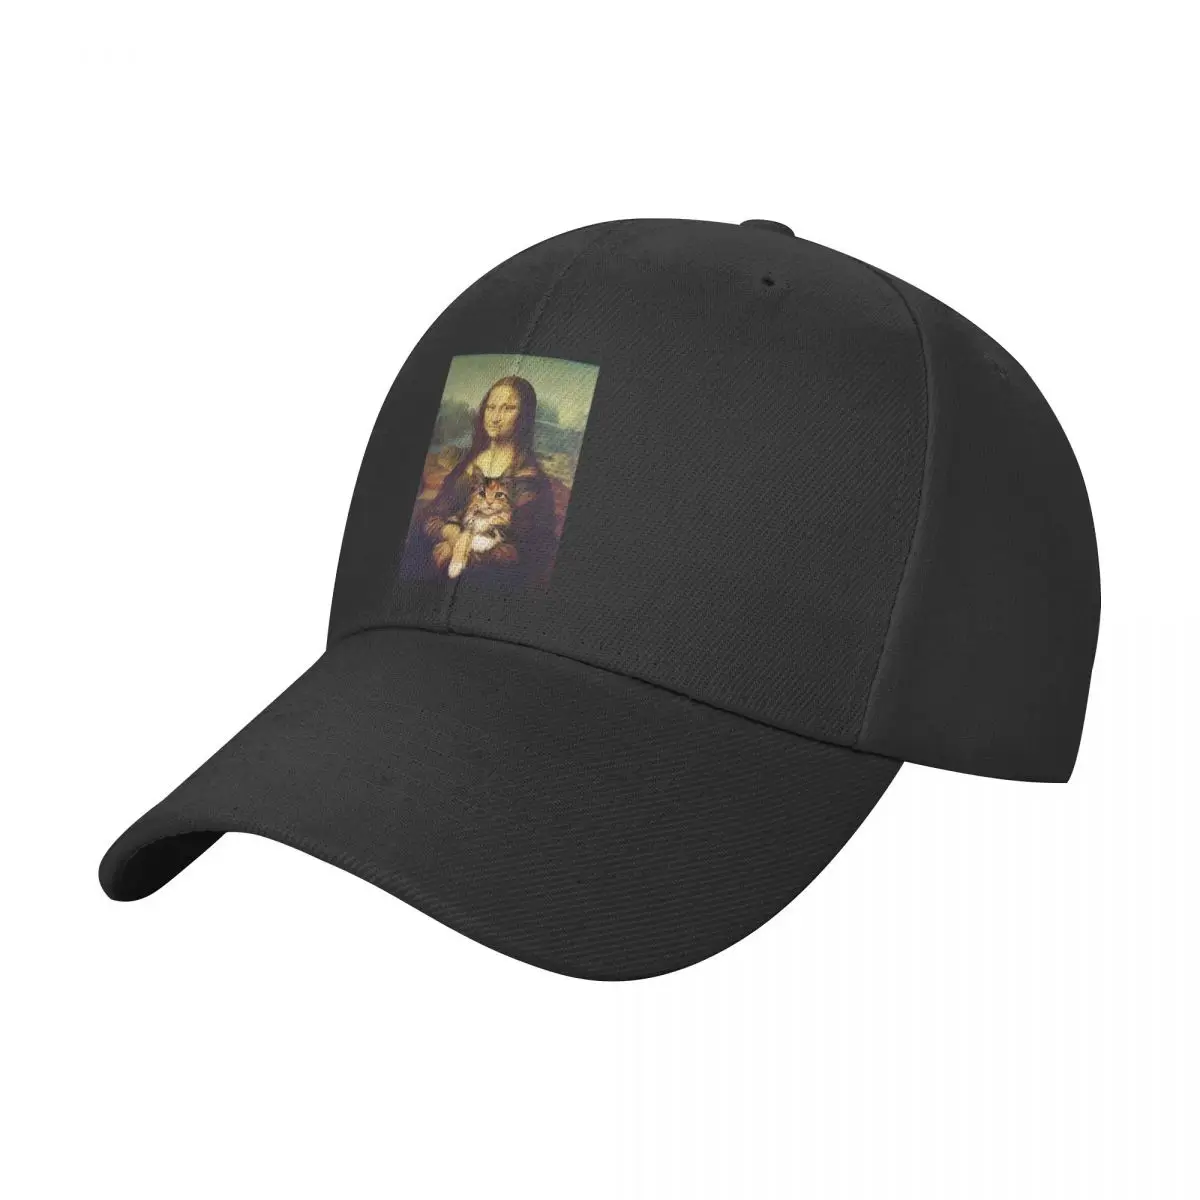 

Mona Lisa Funny Baseball Cap for Men Women Classic Dad Hat Plain Cap Low Profile